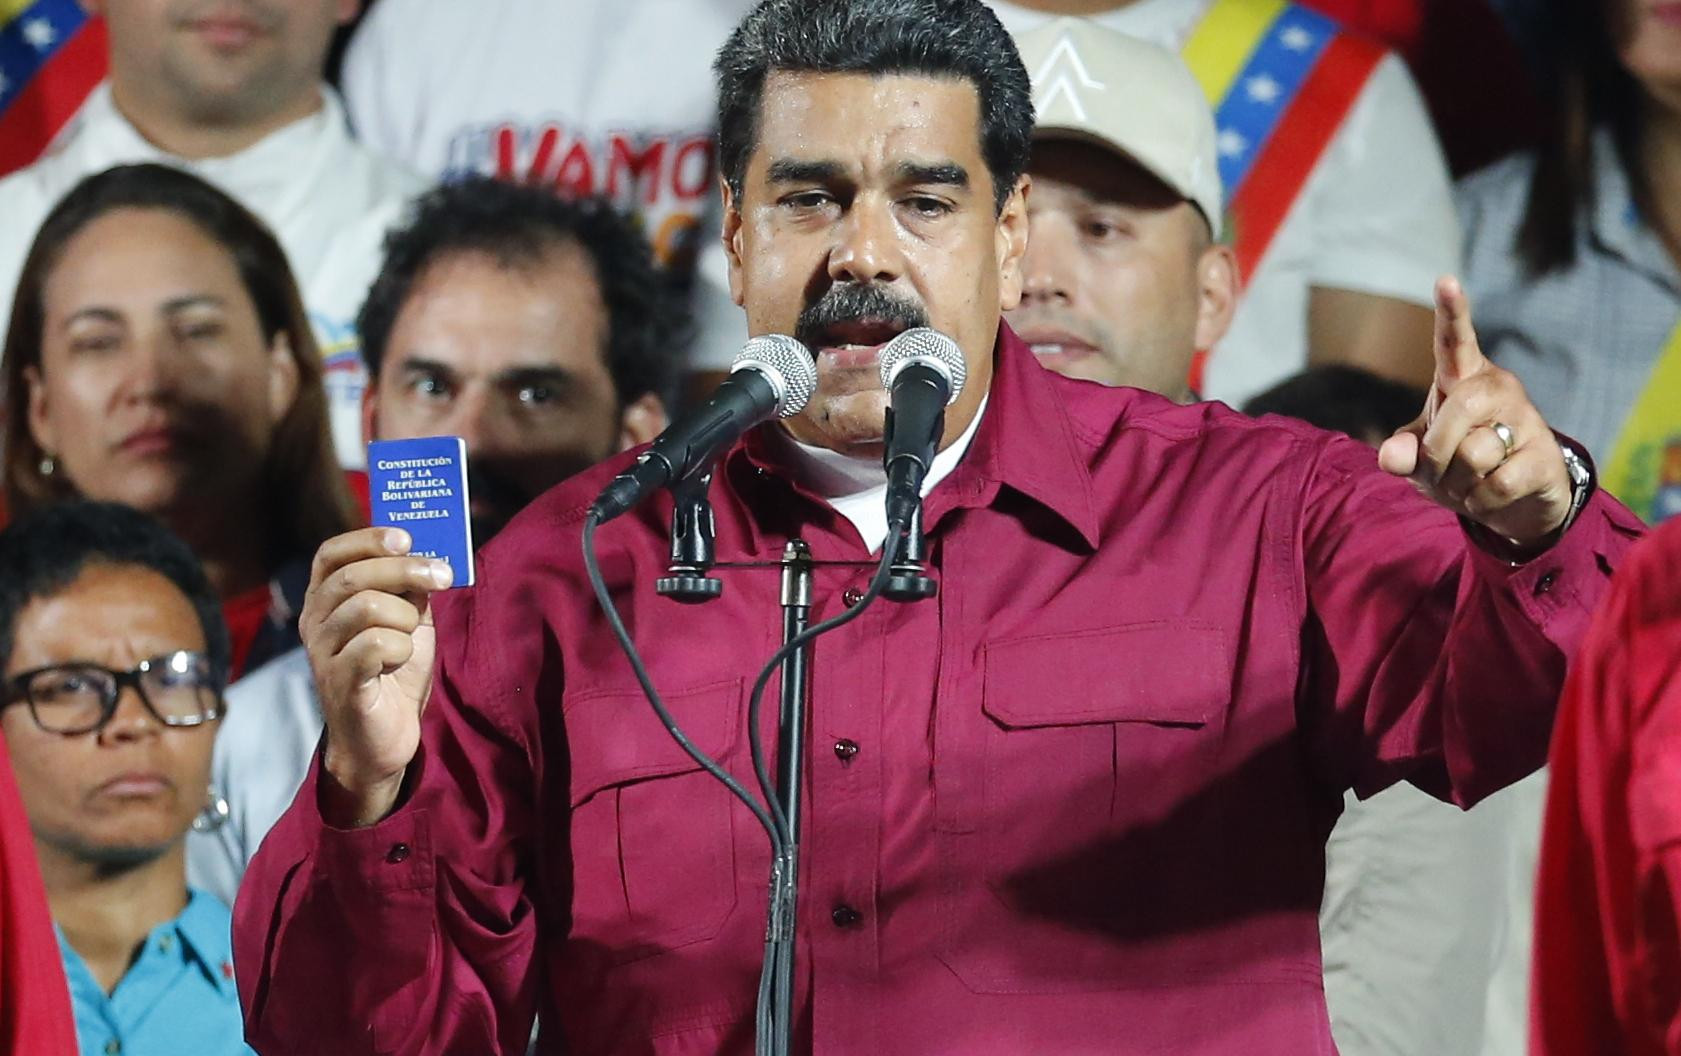 KAD NE ZNAŠ GDE ĆEŠ, UDRI PO ŠVABAMA! Maduro PROTERUJE nemačkog ambasadora - Sprovodio ZAVERENIČKU AGENDU?!